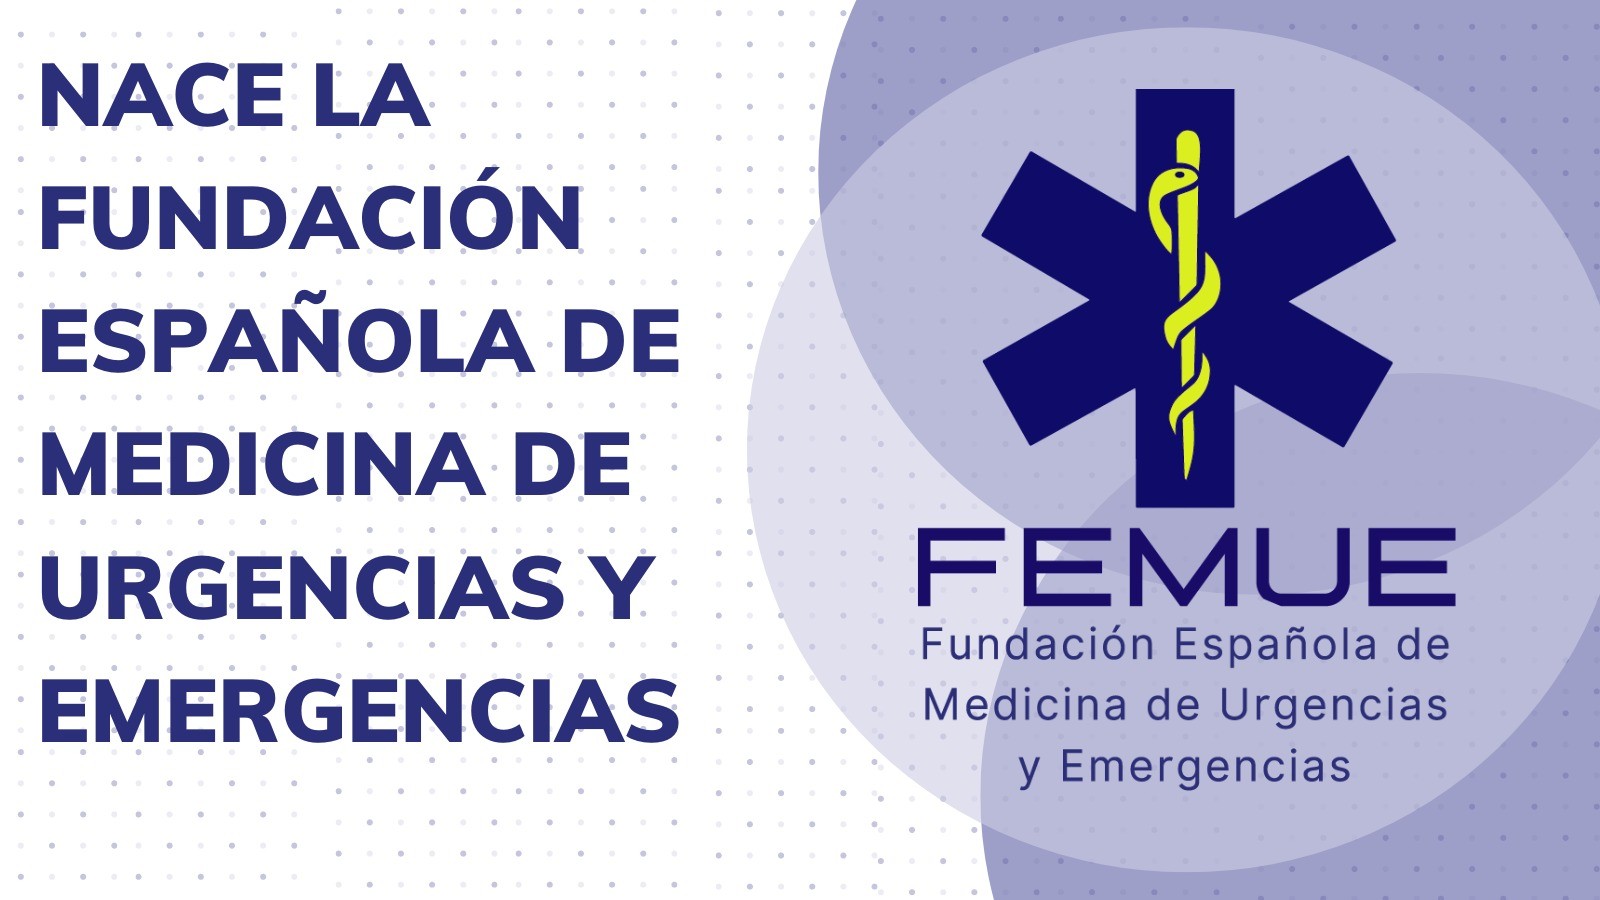 Nace la Fundación Española de Medicina de Urgencias y Emergencias (FEMUE) para apoyar la investigación y formación en el ámbito de las Urgencias y mergencias